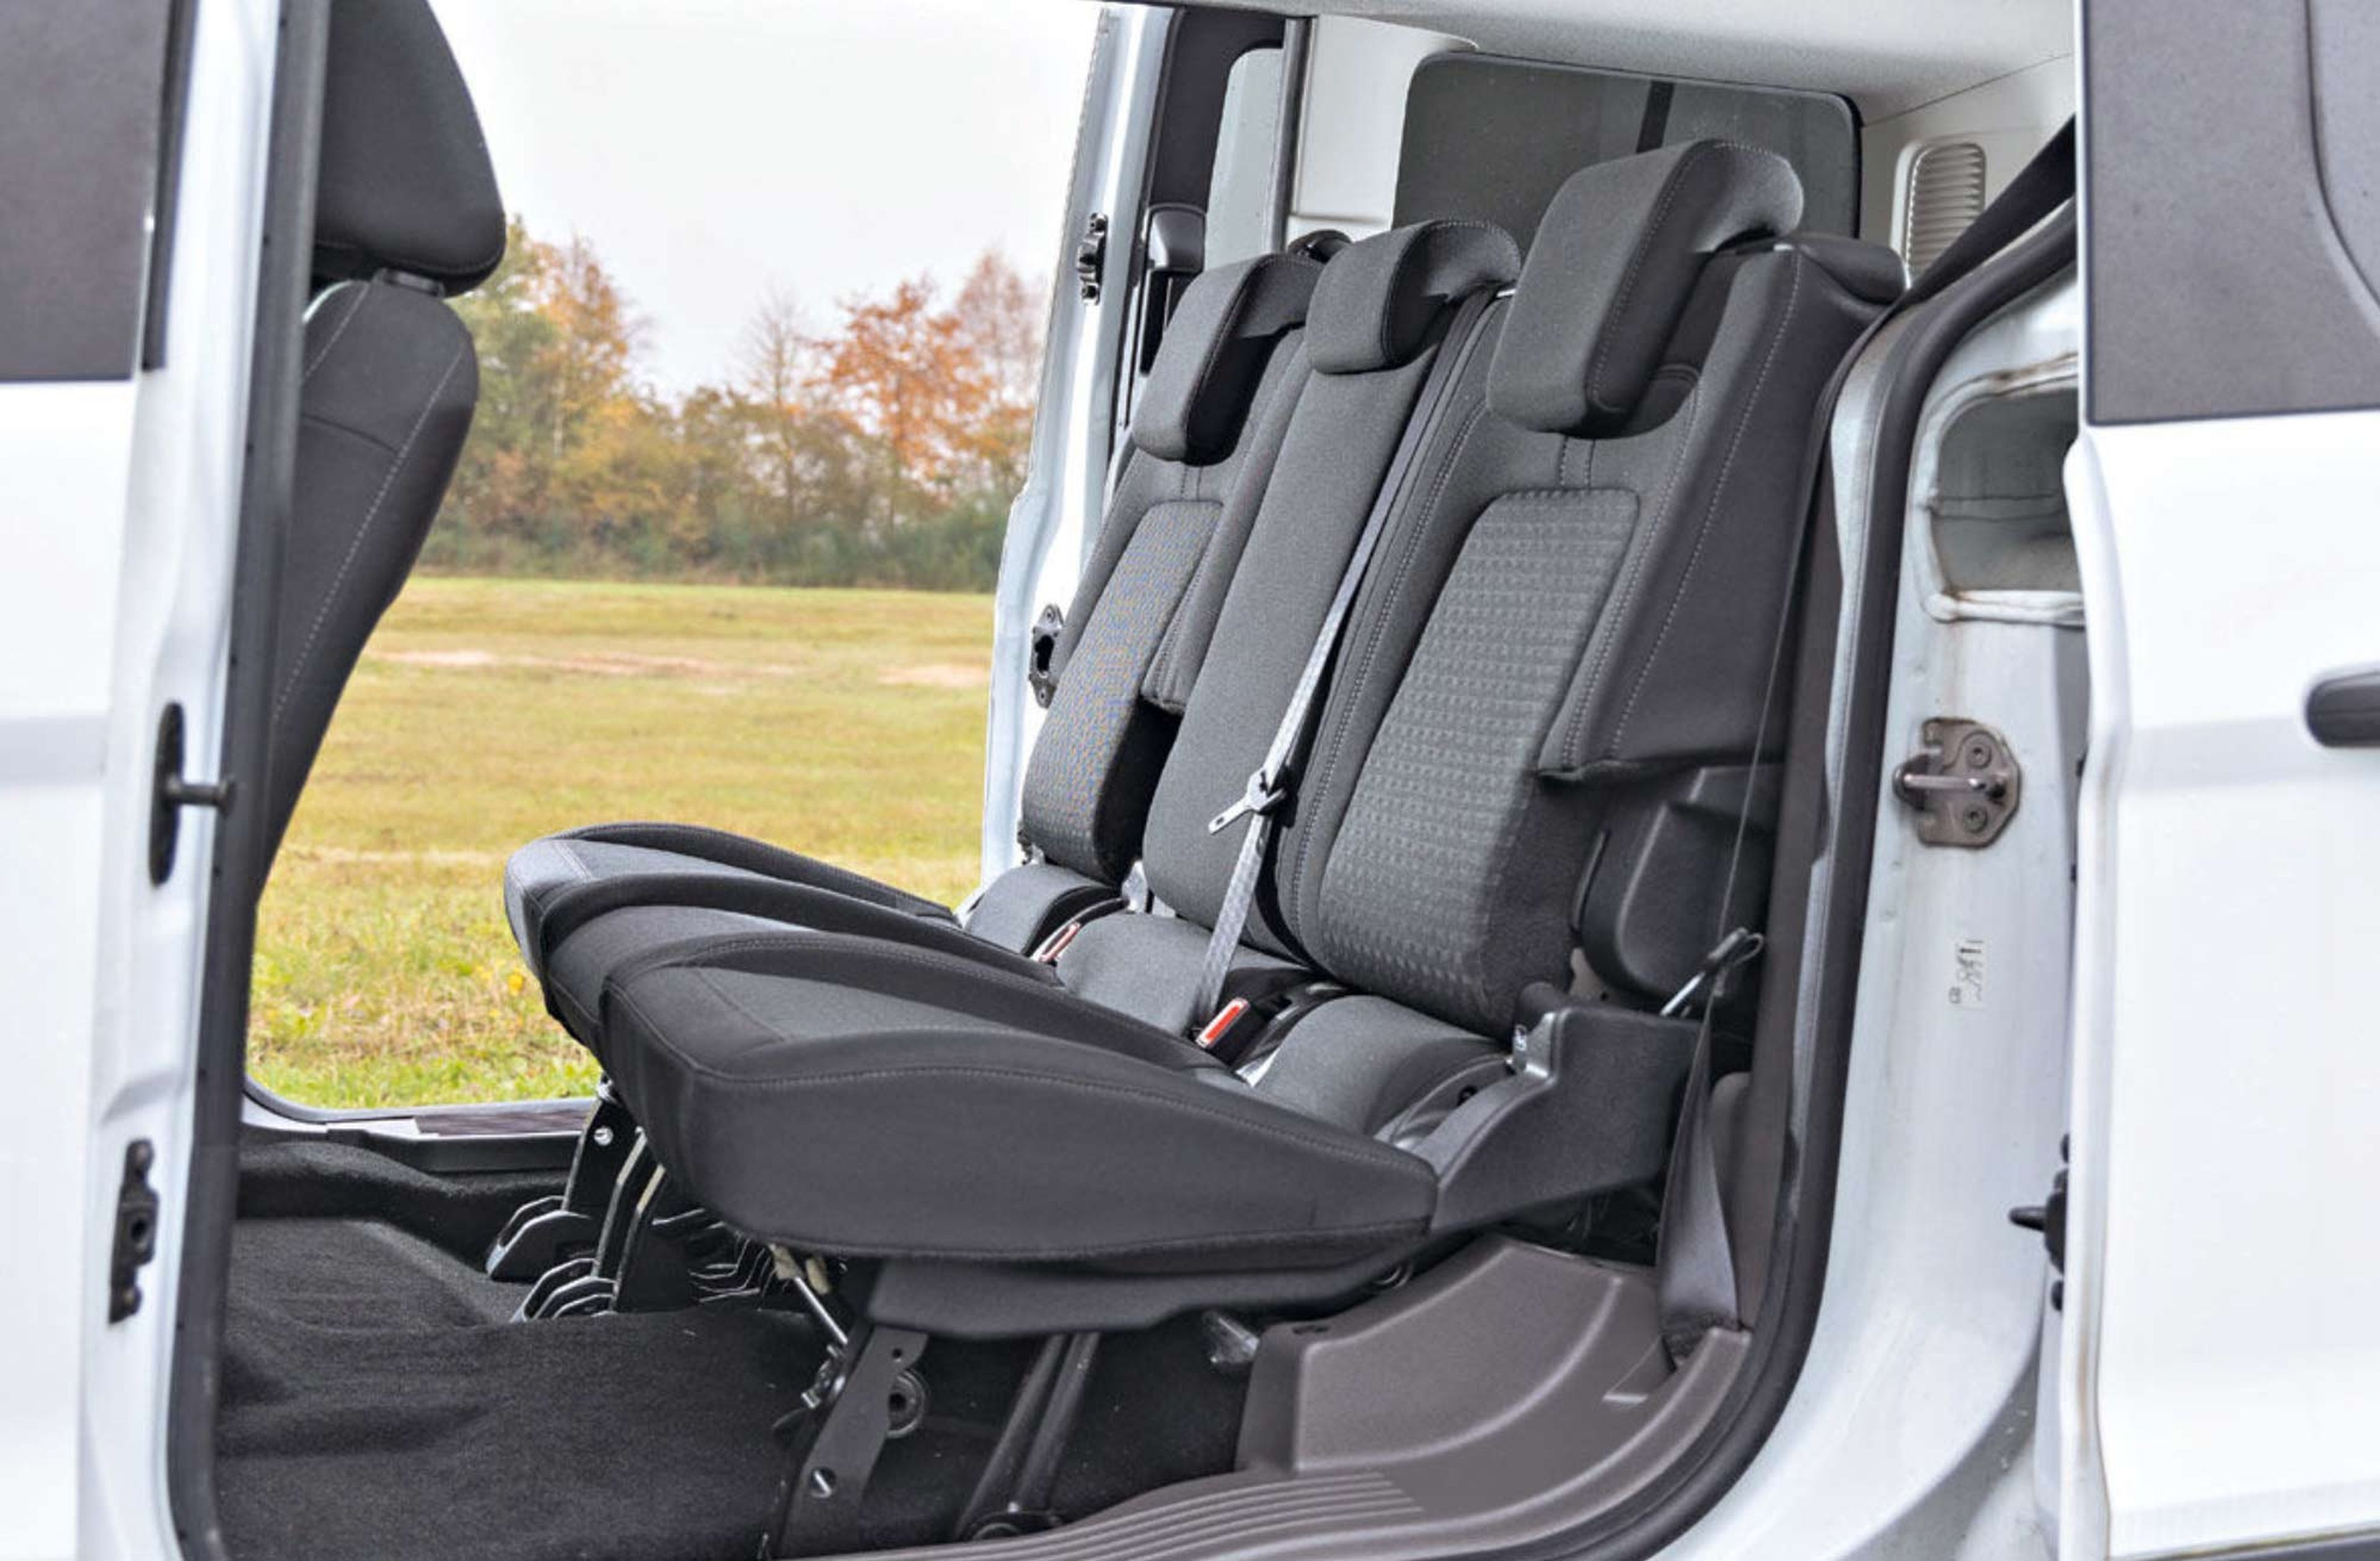 Prueba de segunda mano de la Ford Tourneo Connect asientos